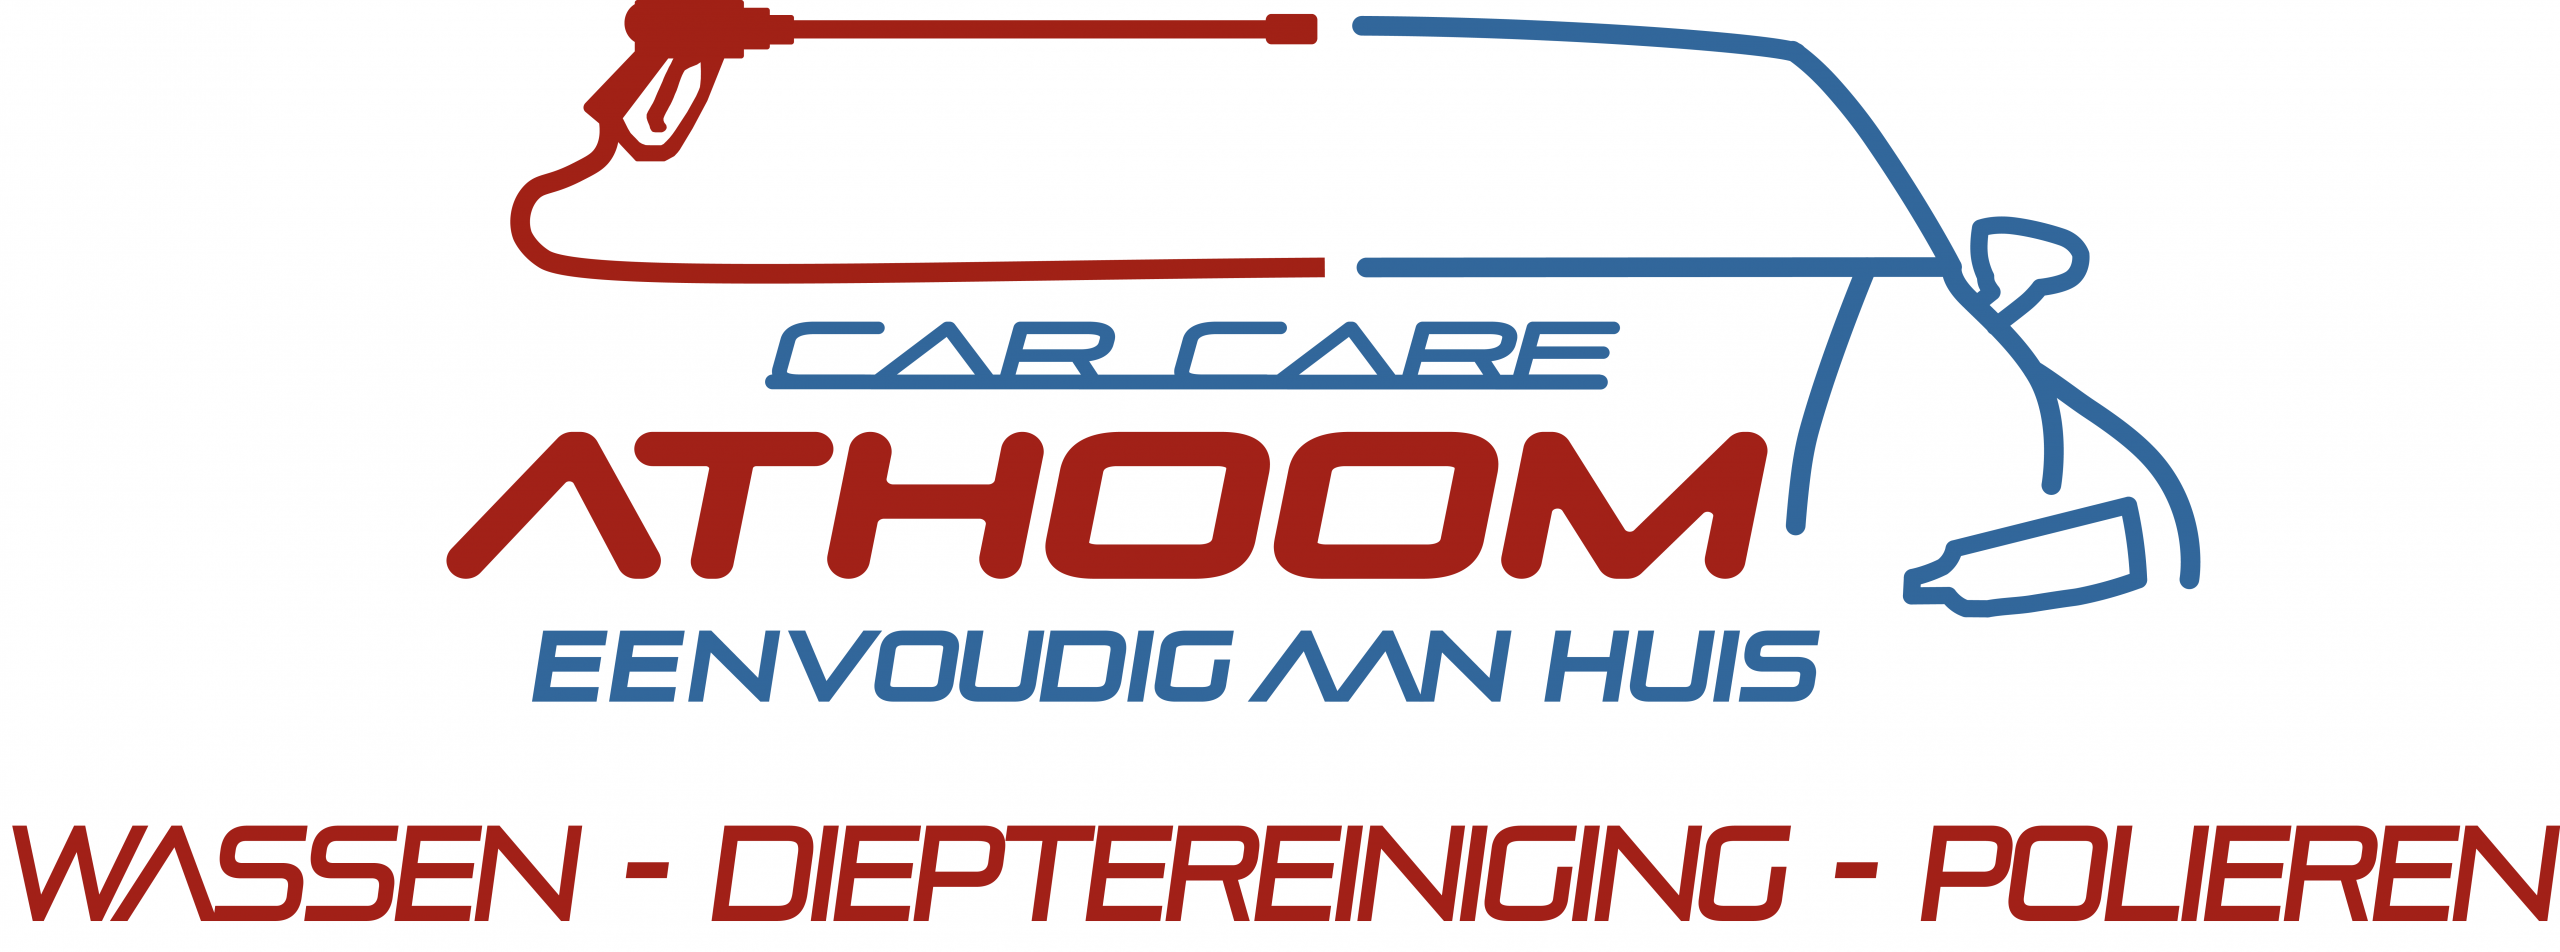 Car Care Athoom